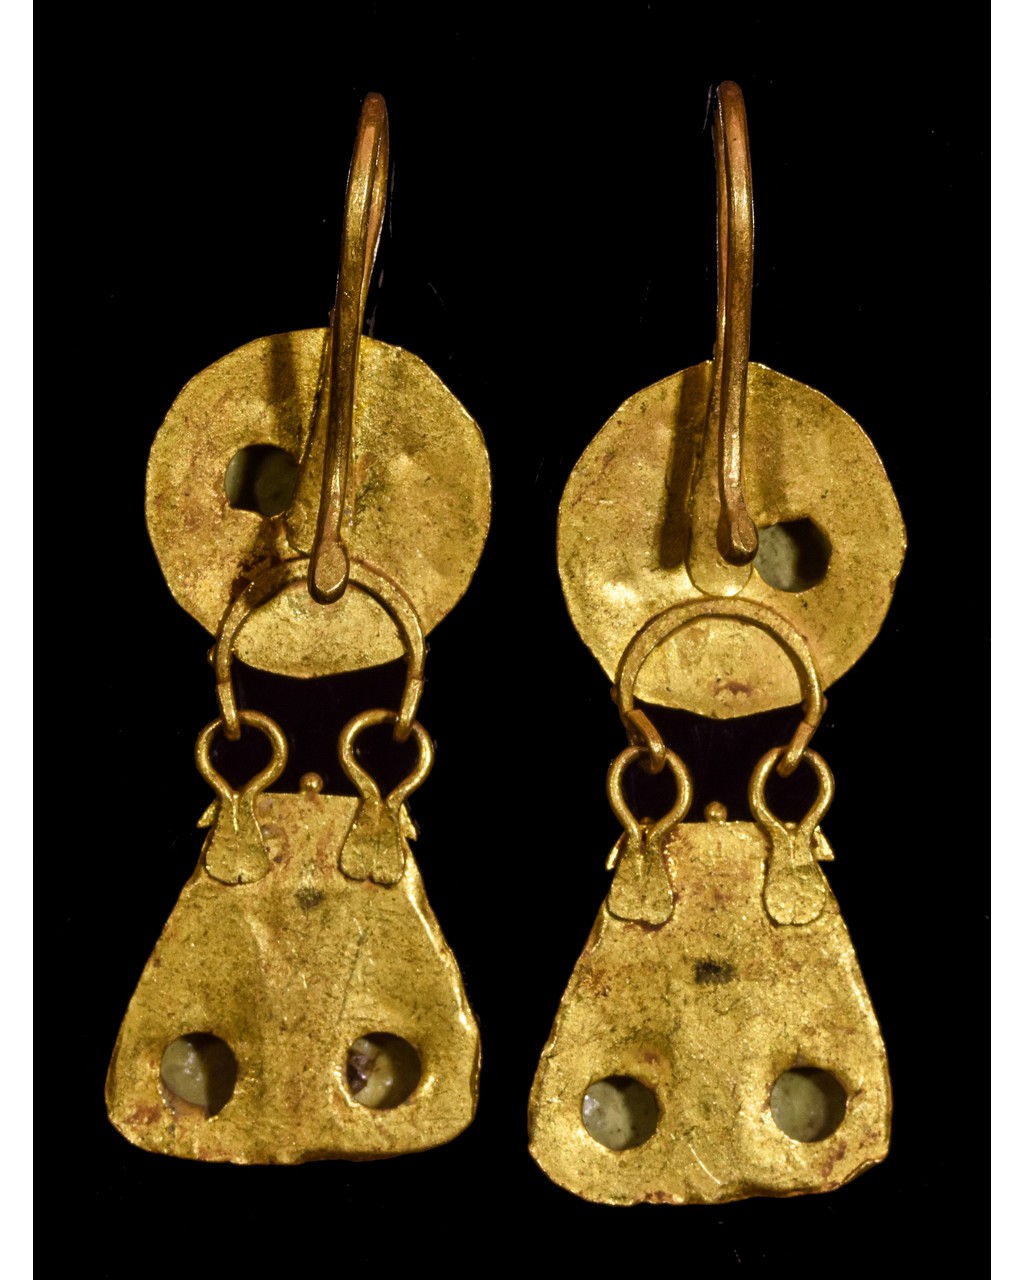 PAIR OF GREEK HELLENISTIC GOLD EARRINGS - Image 4 of 4